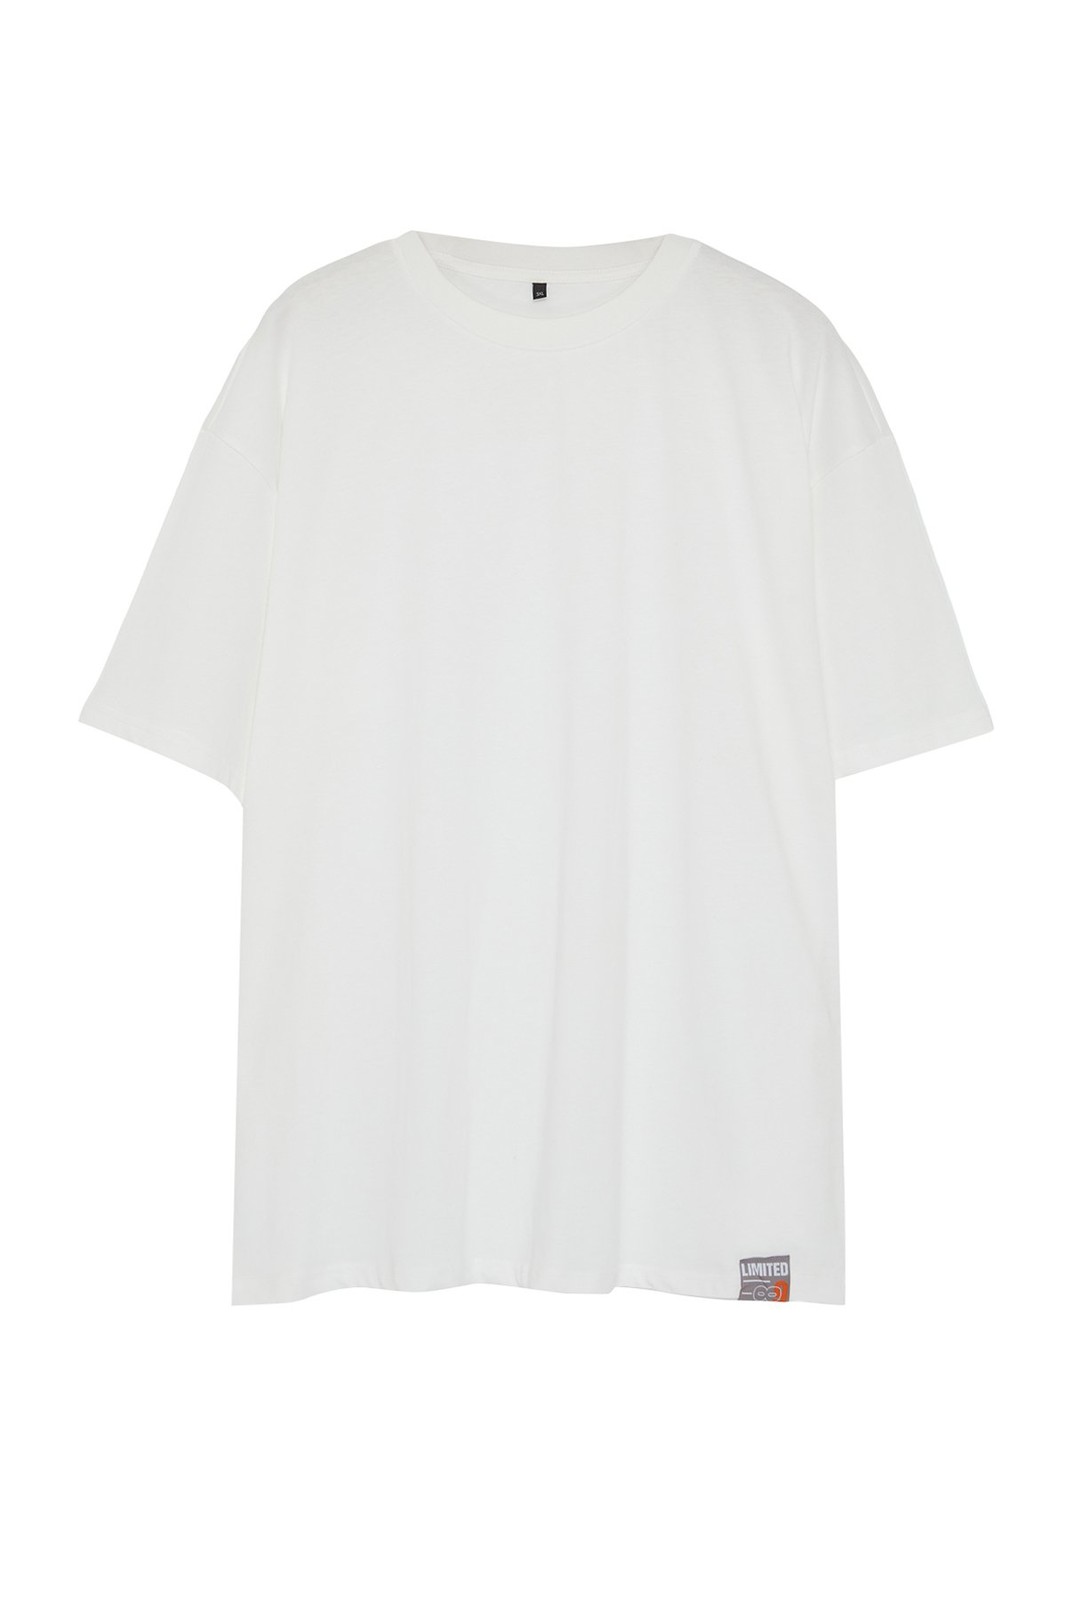 Trendyol Plus Size Men's Ecru Relaxed/Comfortable Cut 100% Cotton Label Comfortable T-Shirt